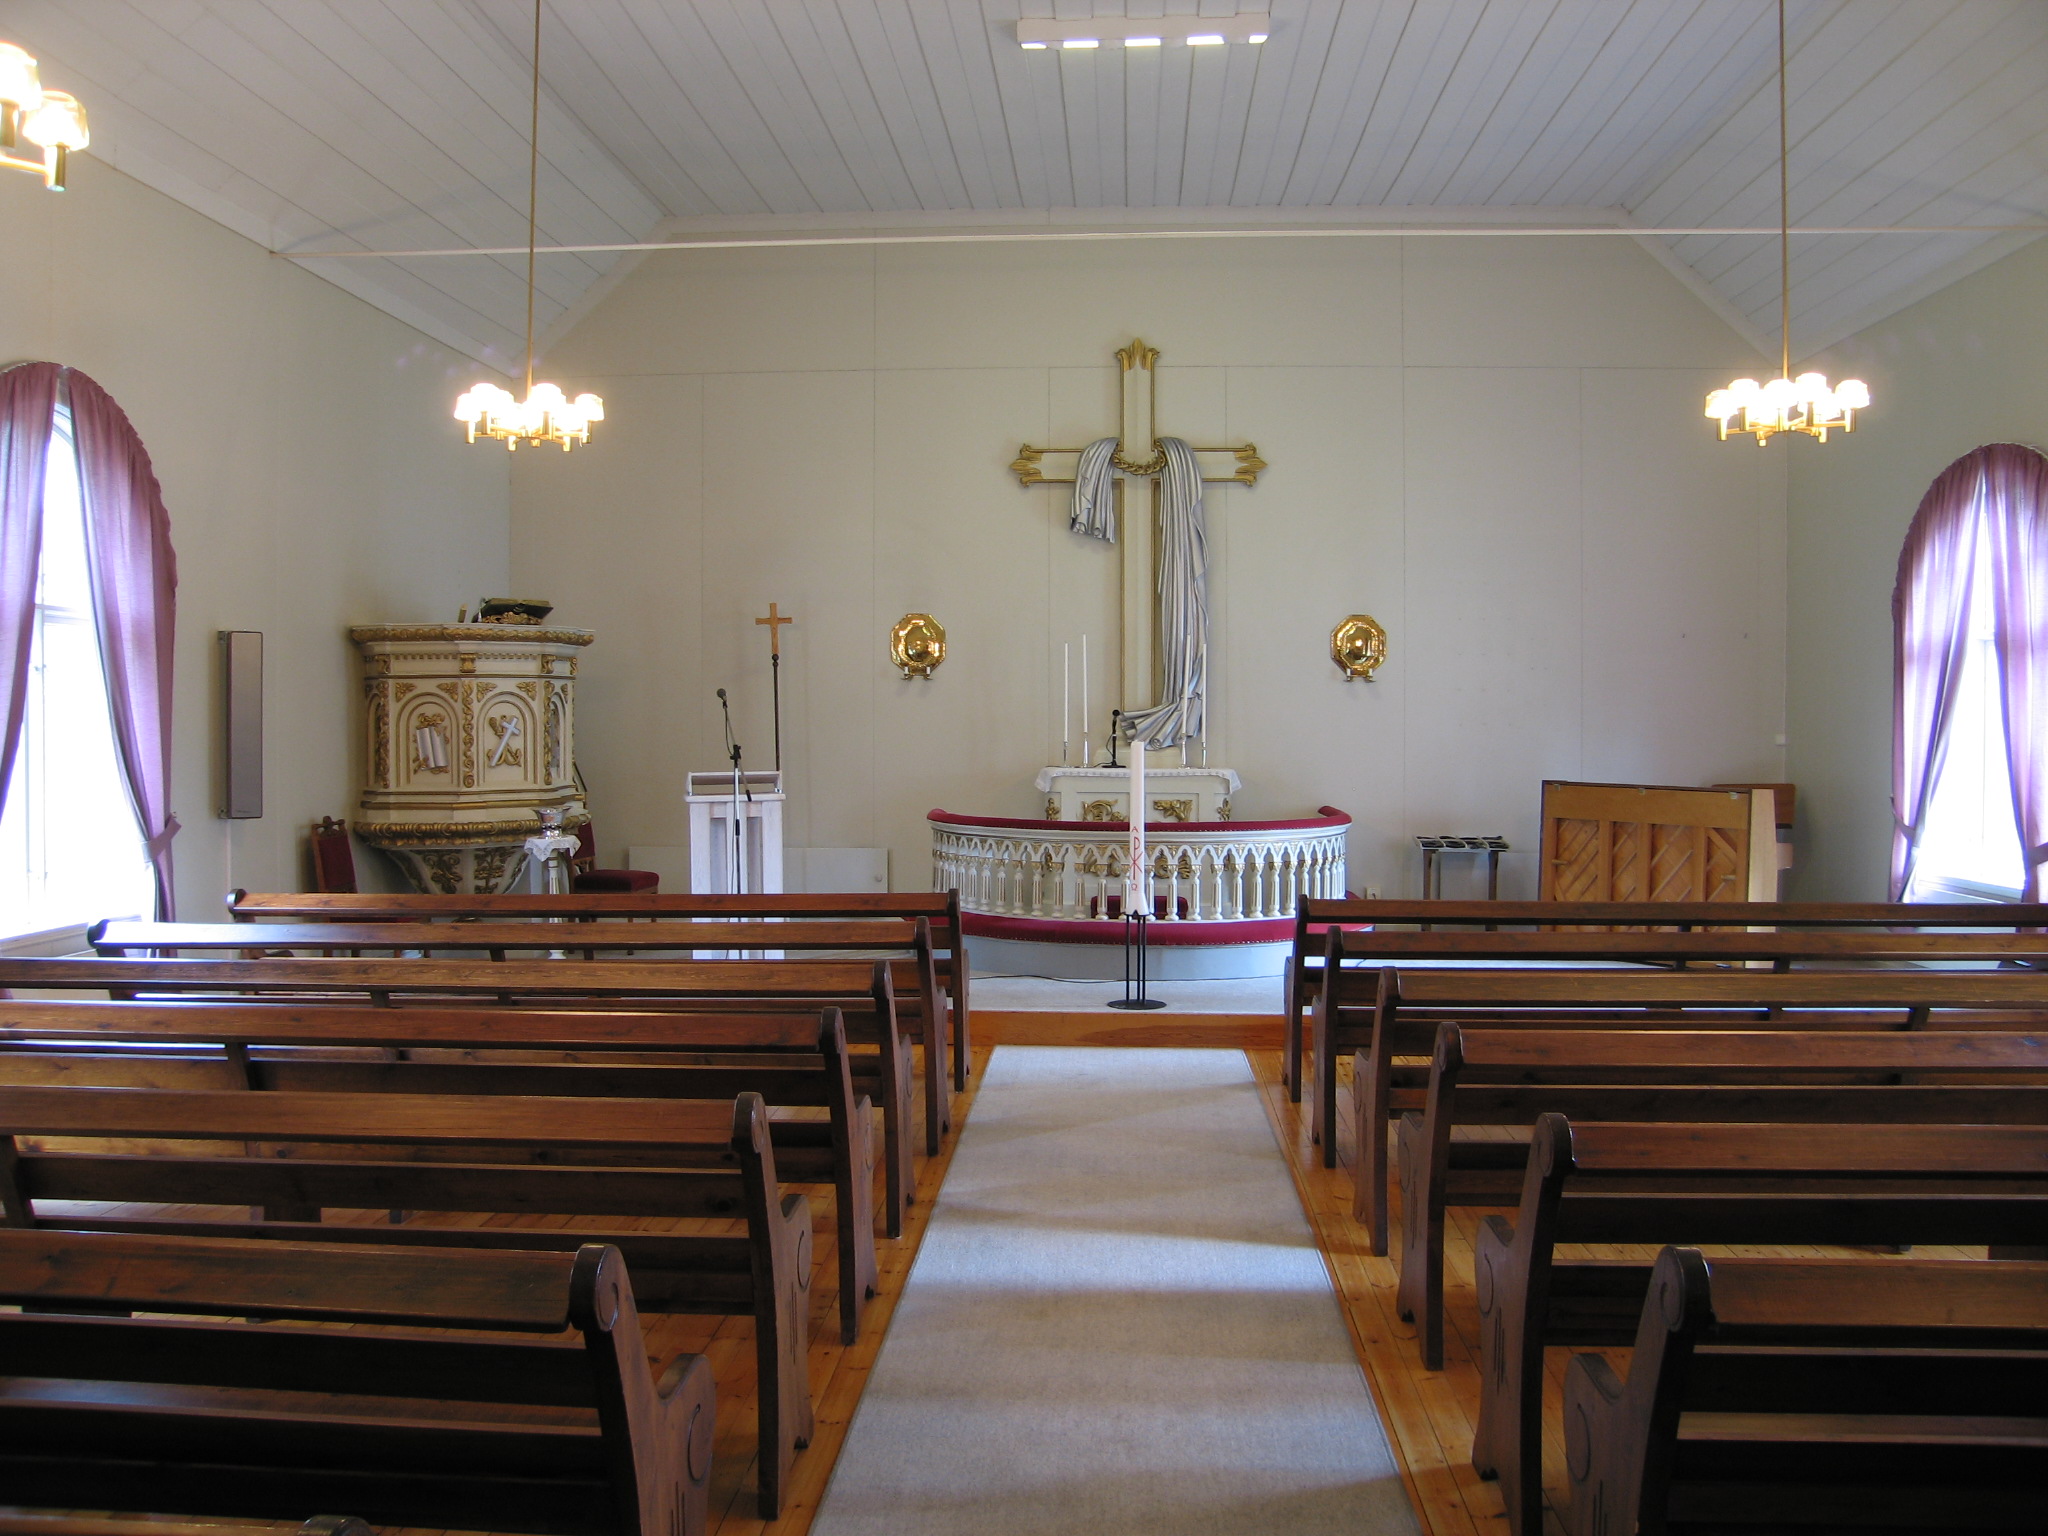 Skede kapell, interiör, kapellsalen, vy från väster mot koret. 